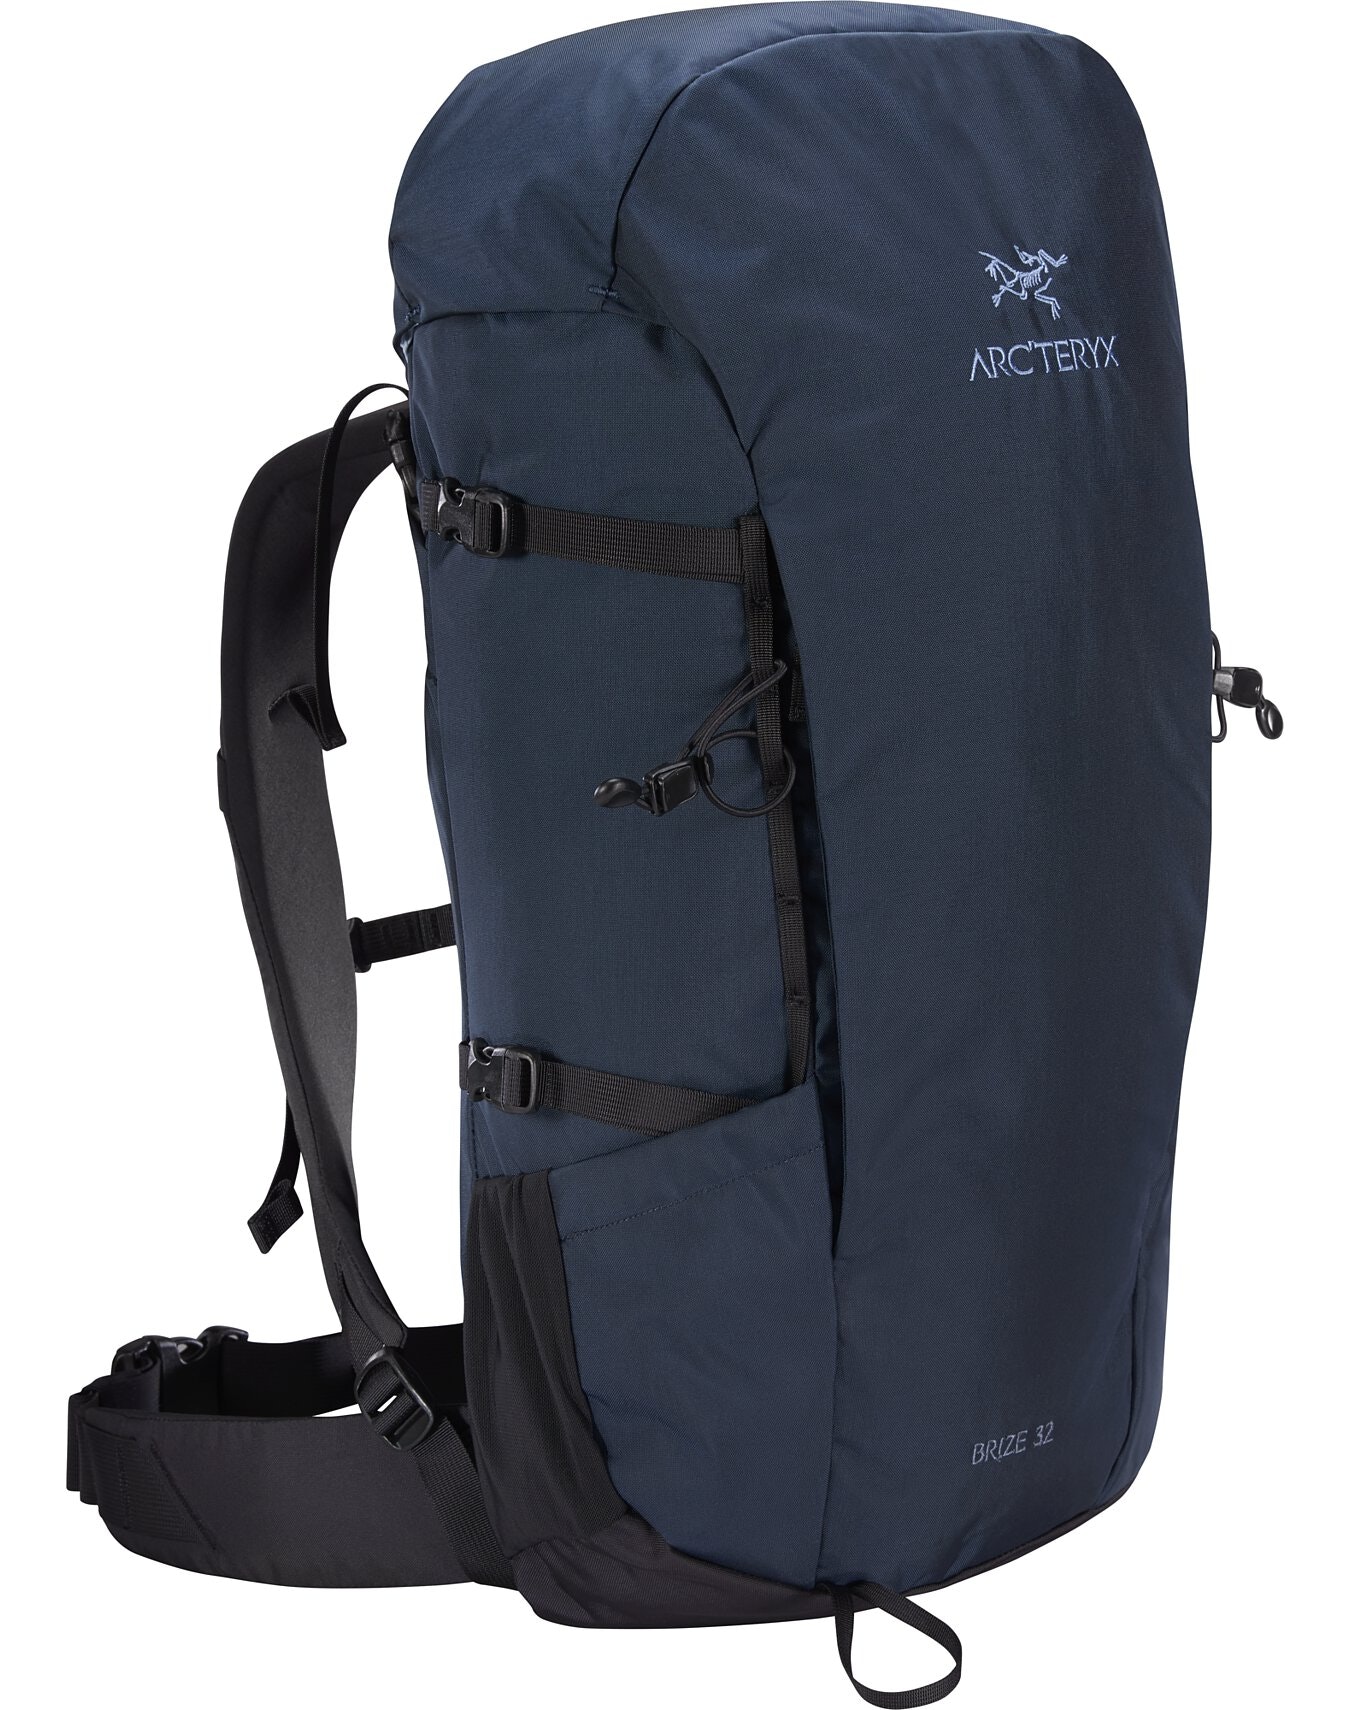 楽天市場 4 アークテリクス Brize 32 Backpack ブライズ32 バックパック Black L 登山とキャンプ用品のさかいや